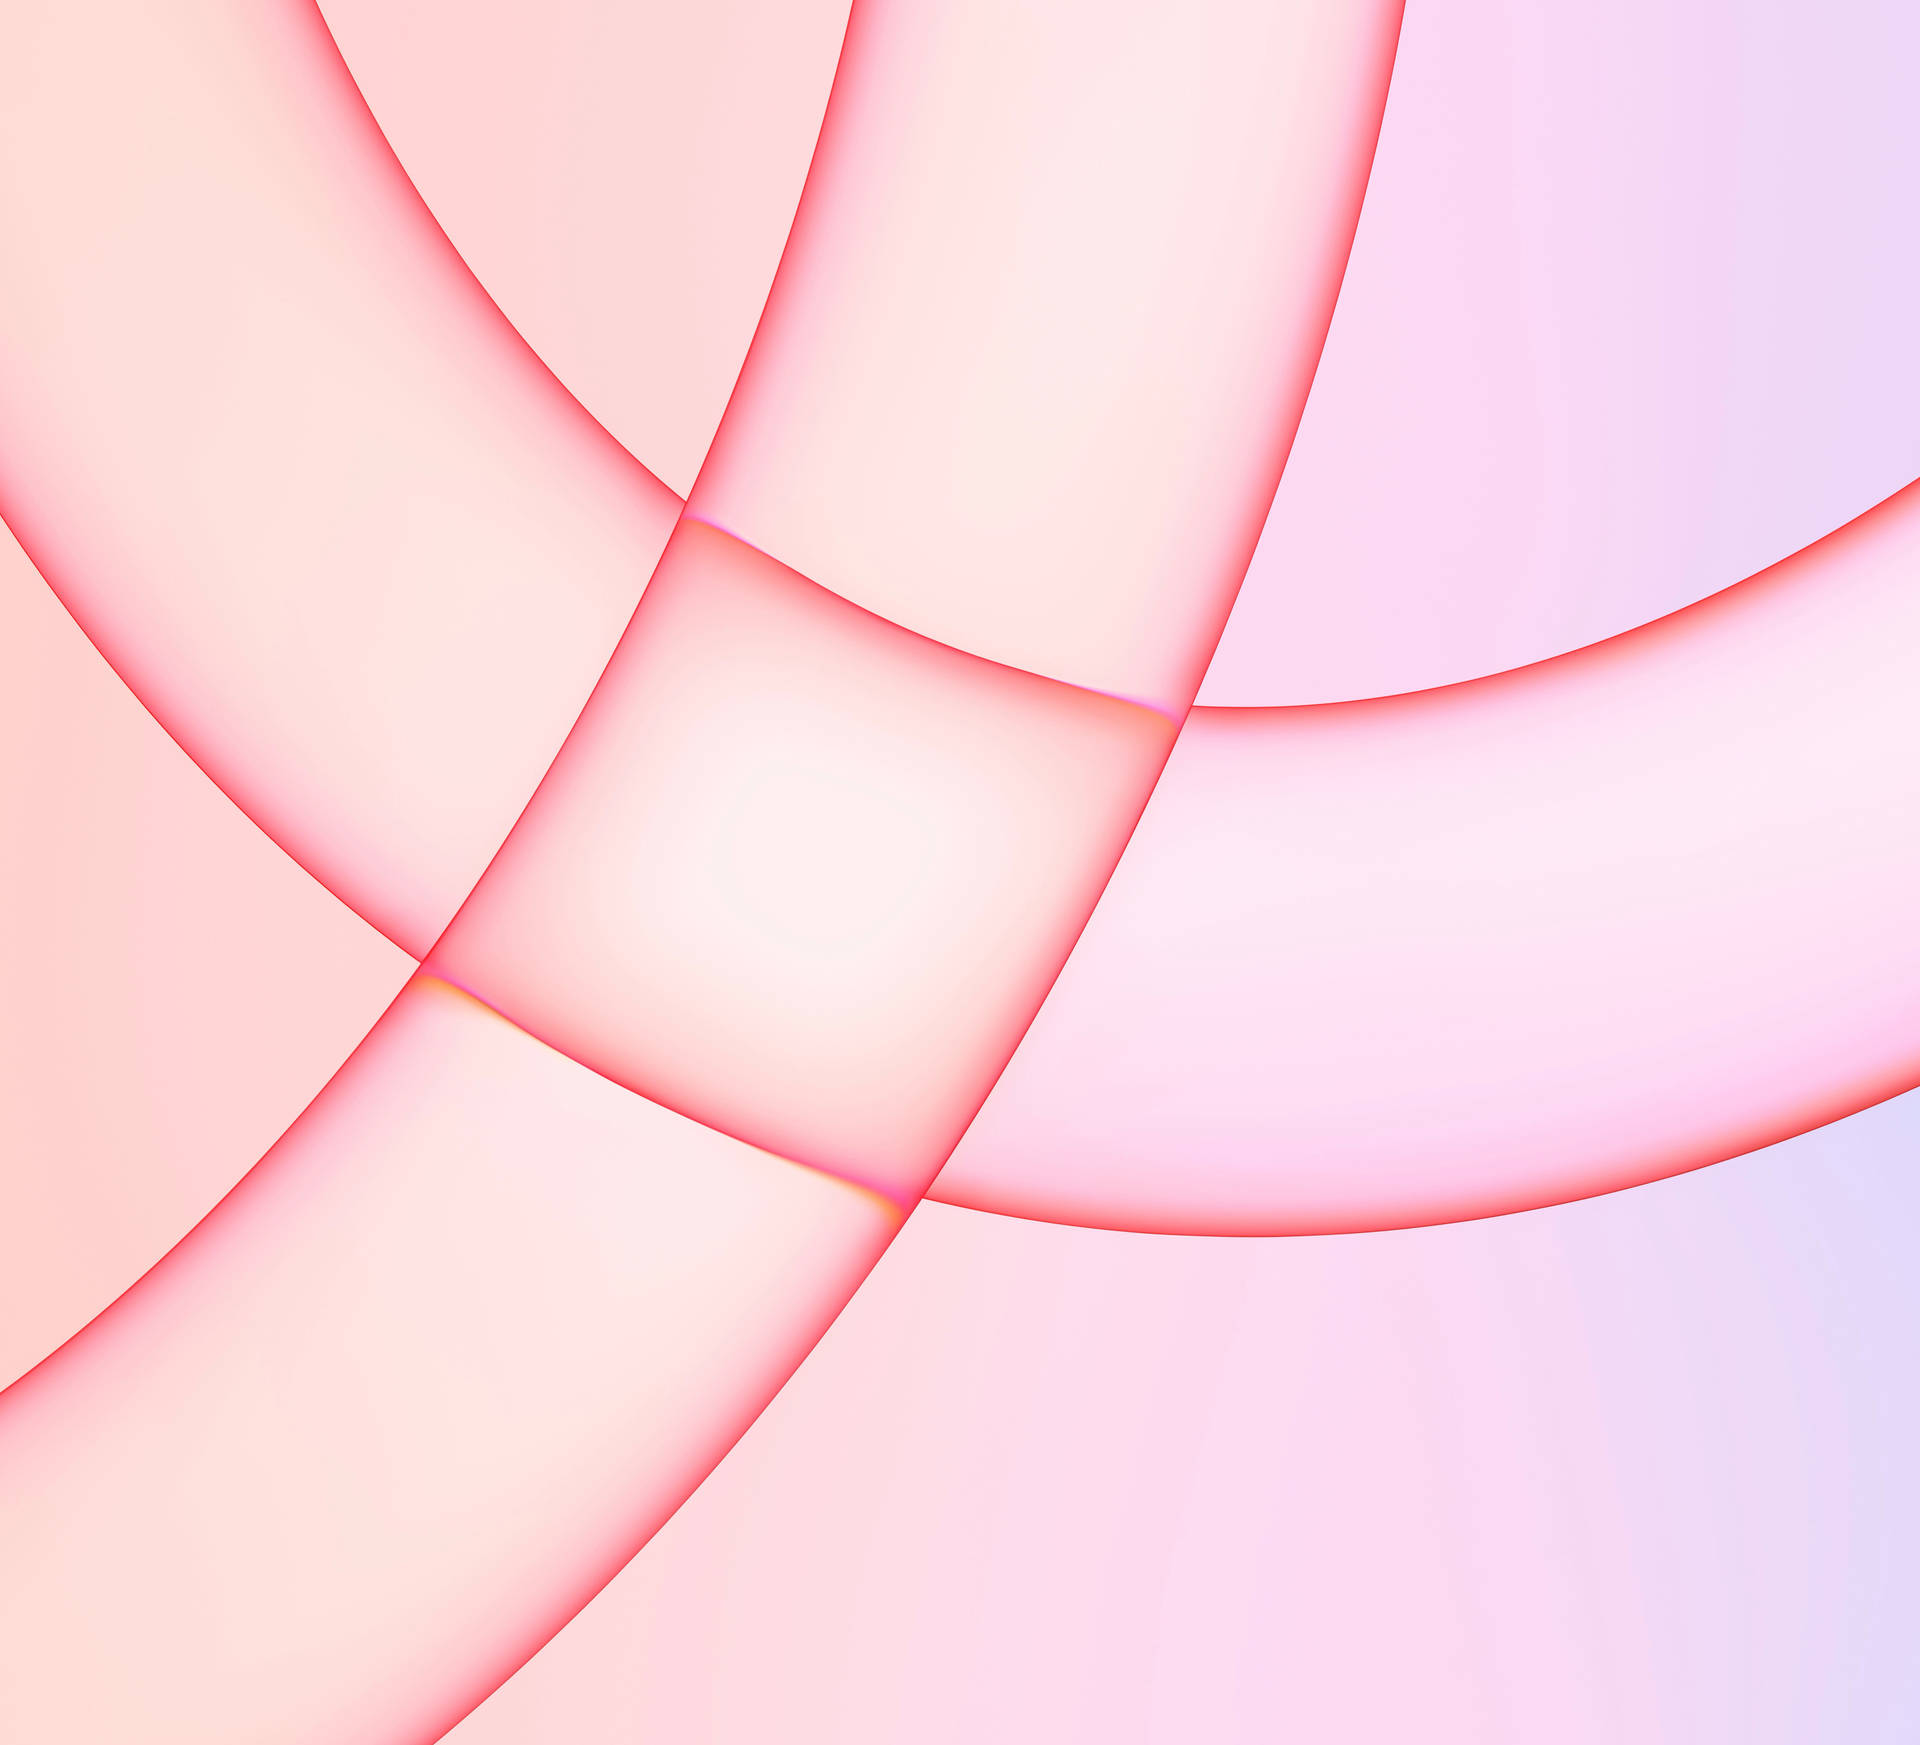 Fondode Pantalla Rosa Claro Con Líneas En Imac 4k. Fondo de pantalla